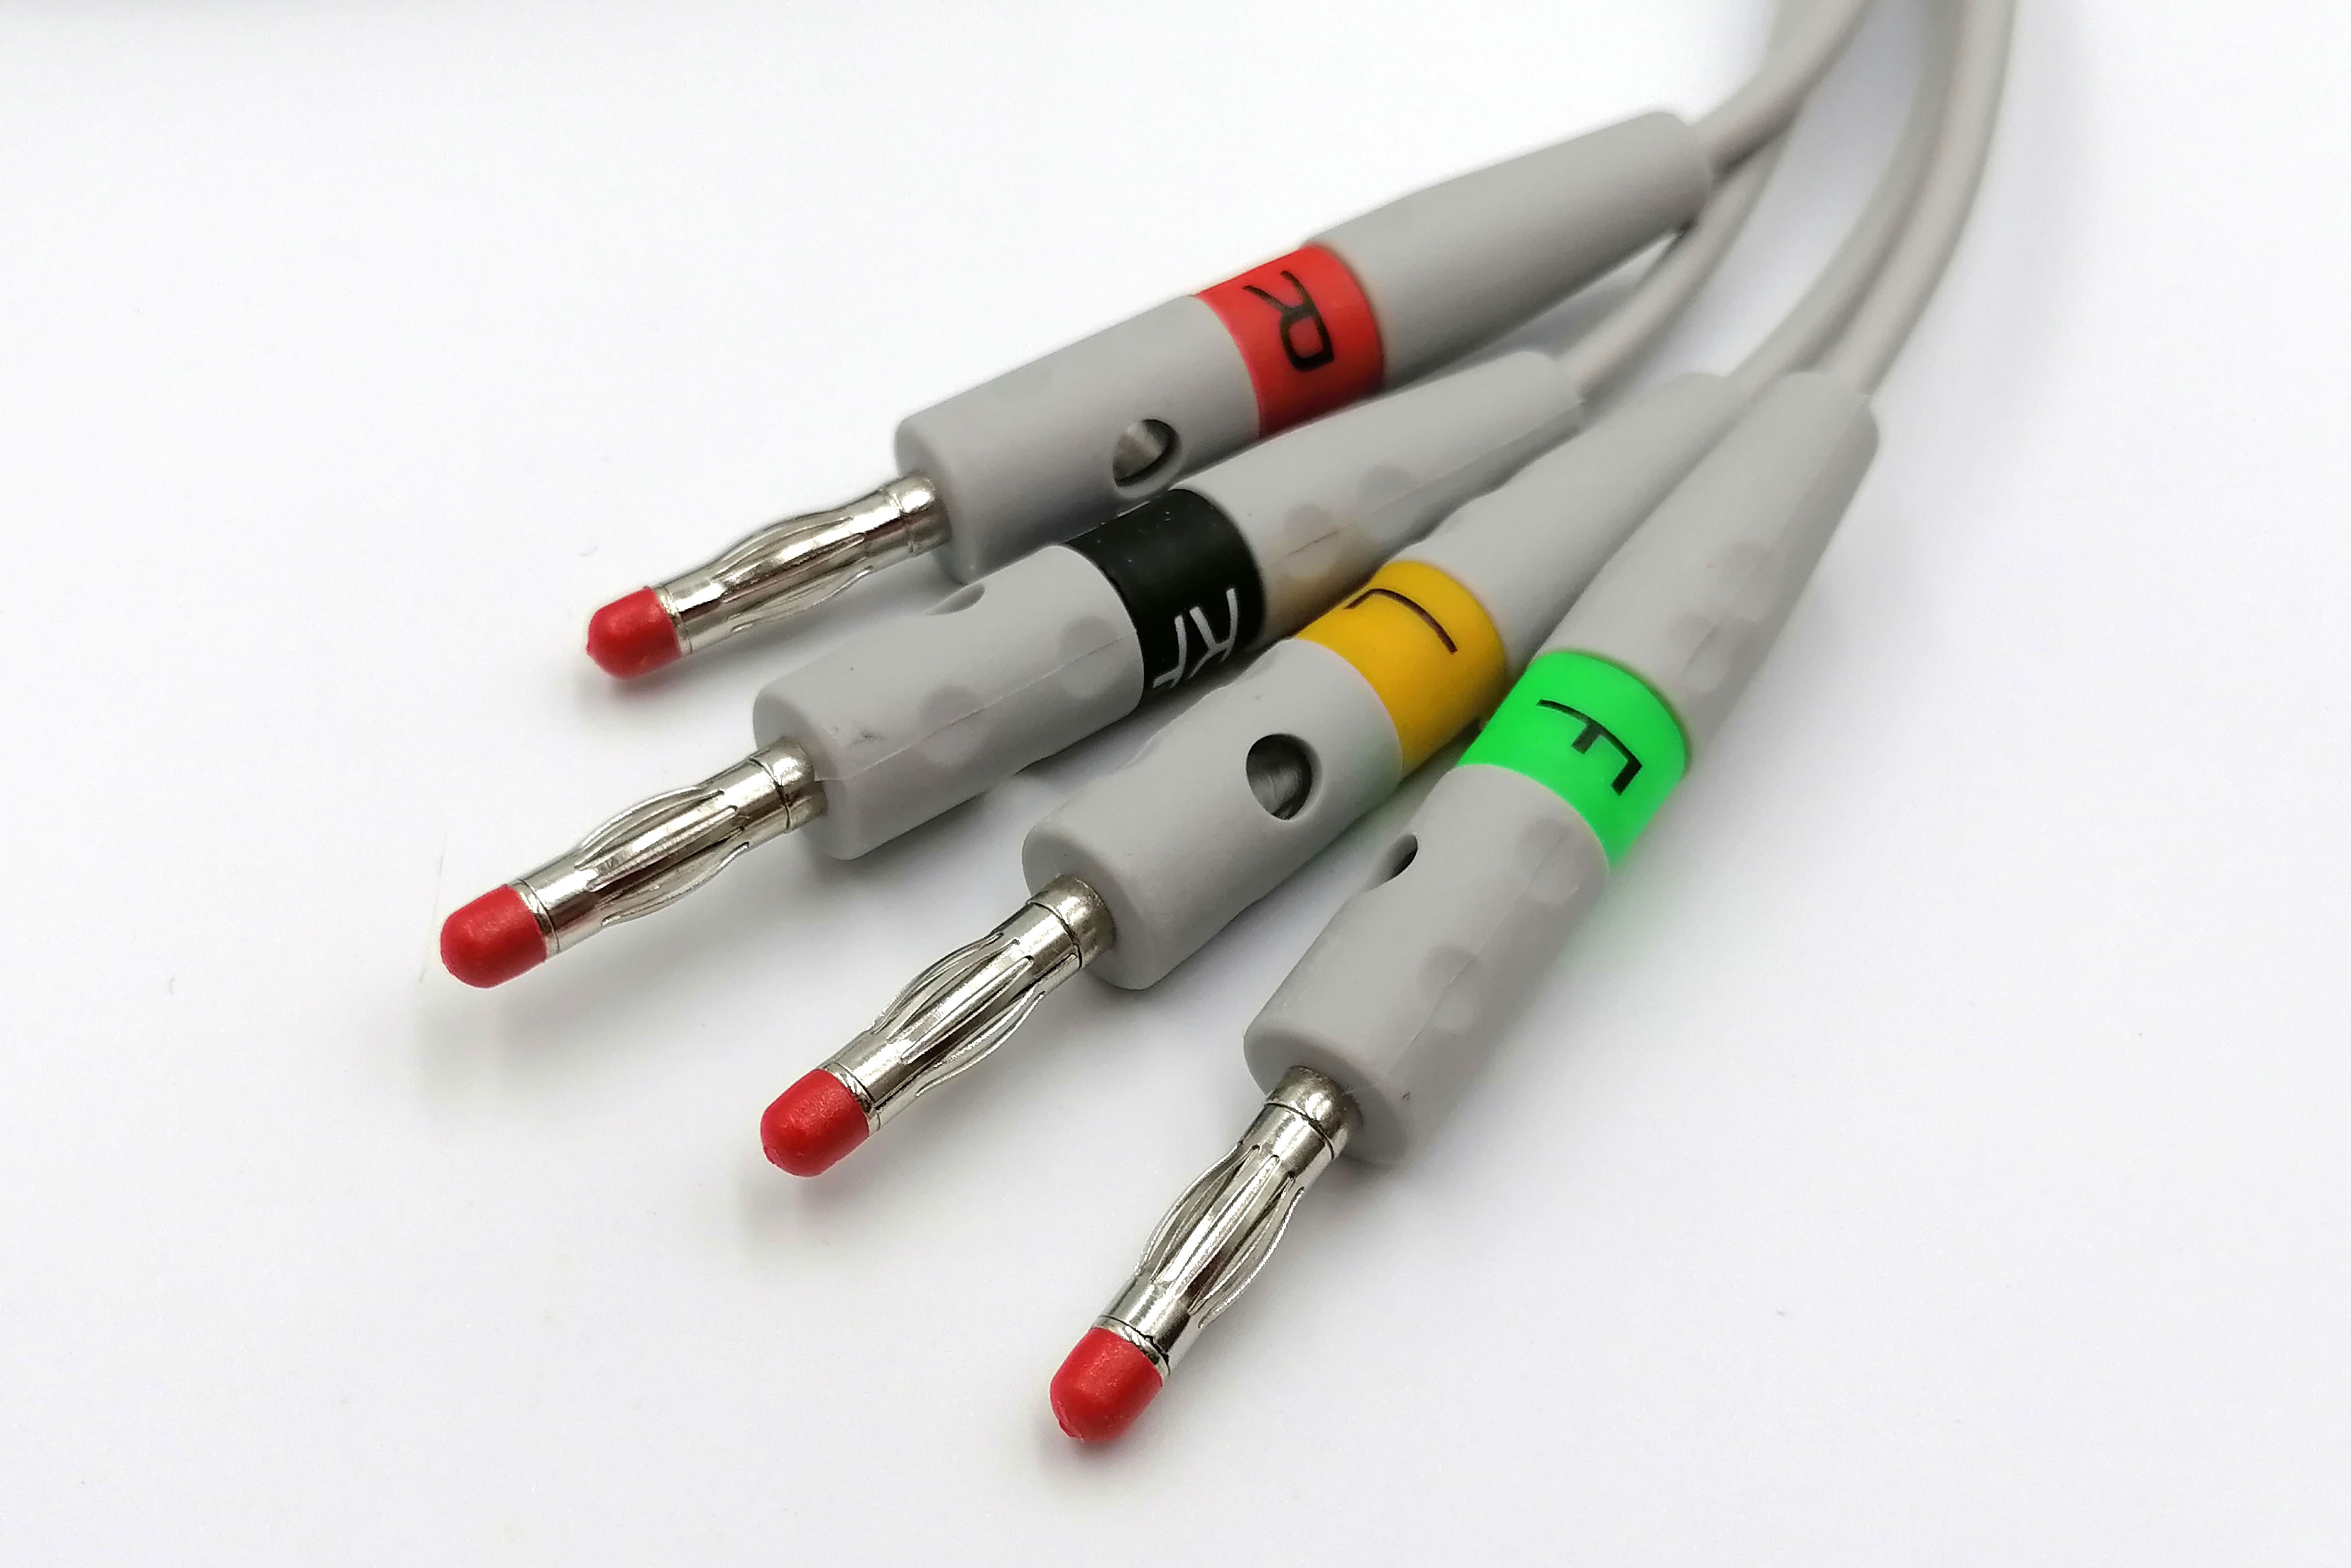 ЭКГ кабель пациента Schiller короткие винты, с отверстиями в штекерах, banana 4мм